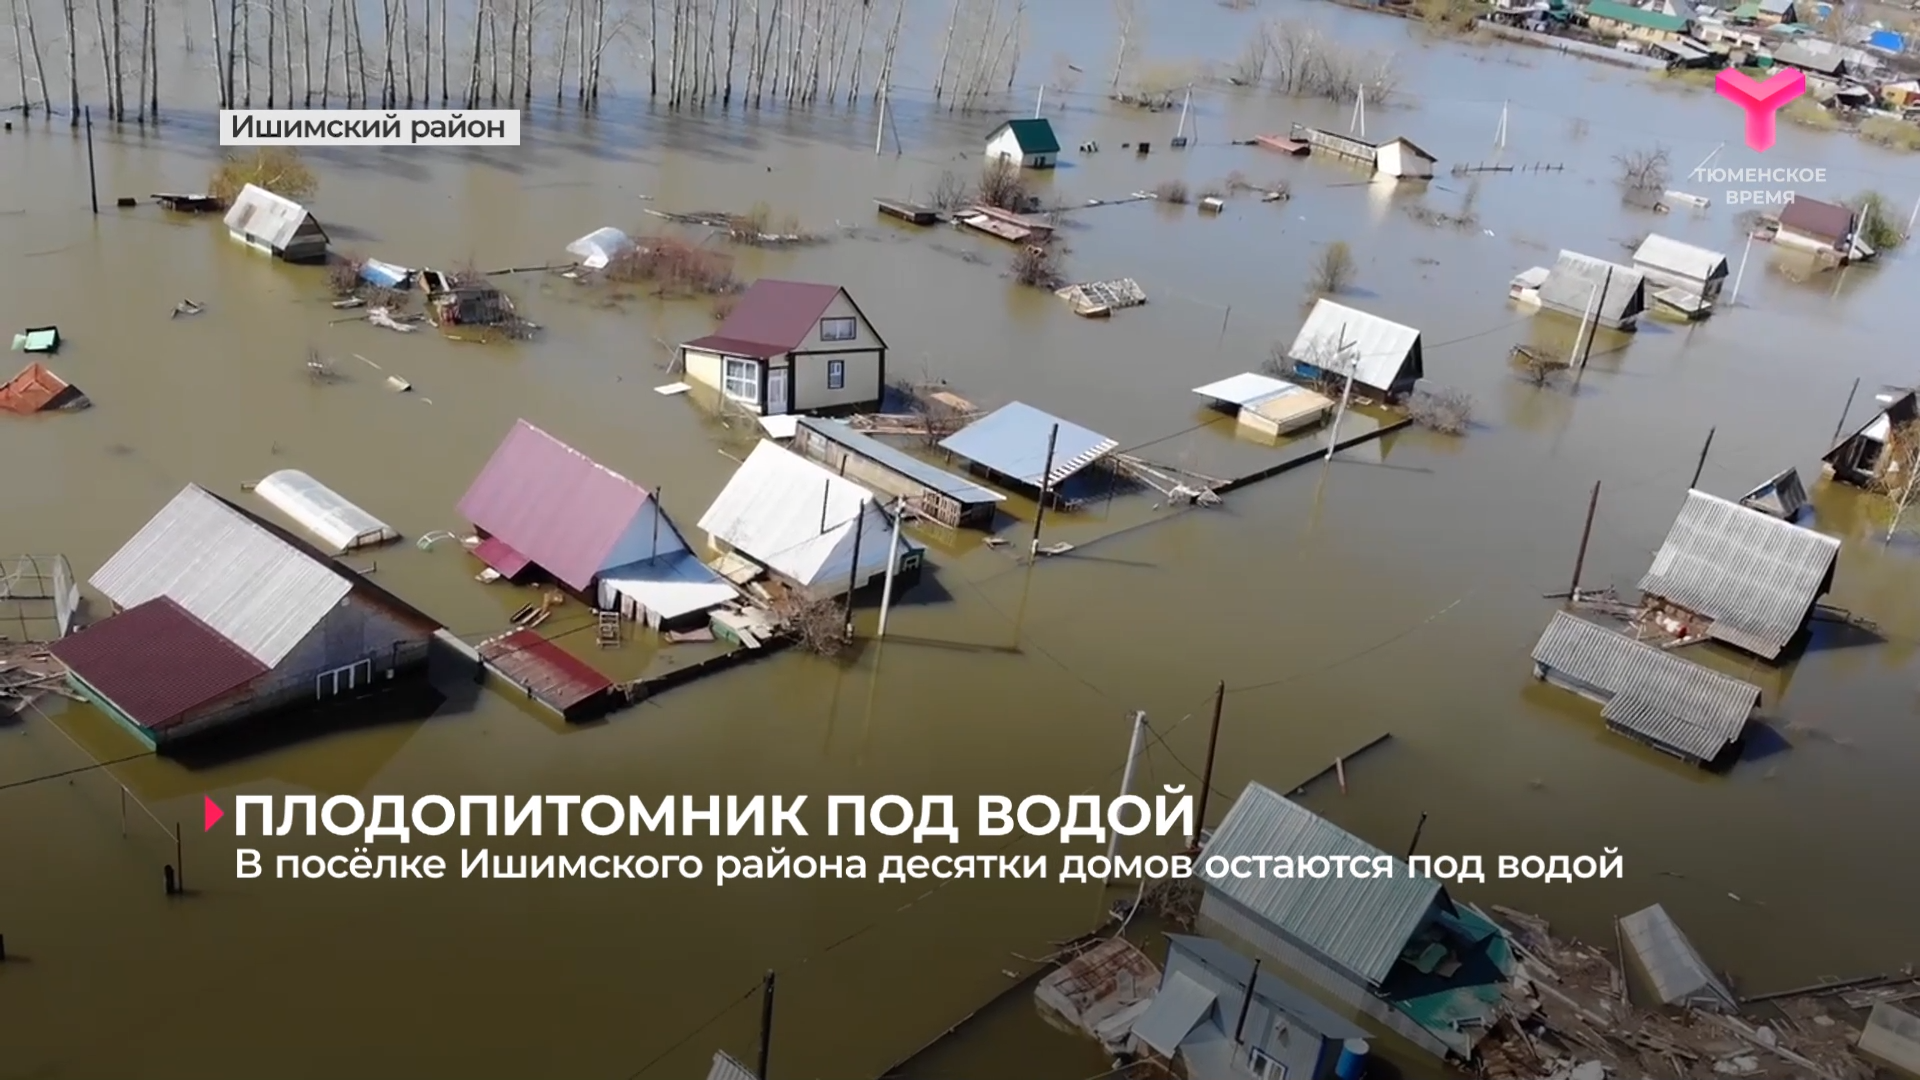 В посёлке Ишимского района десятки домов остаются под водой